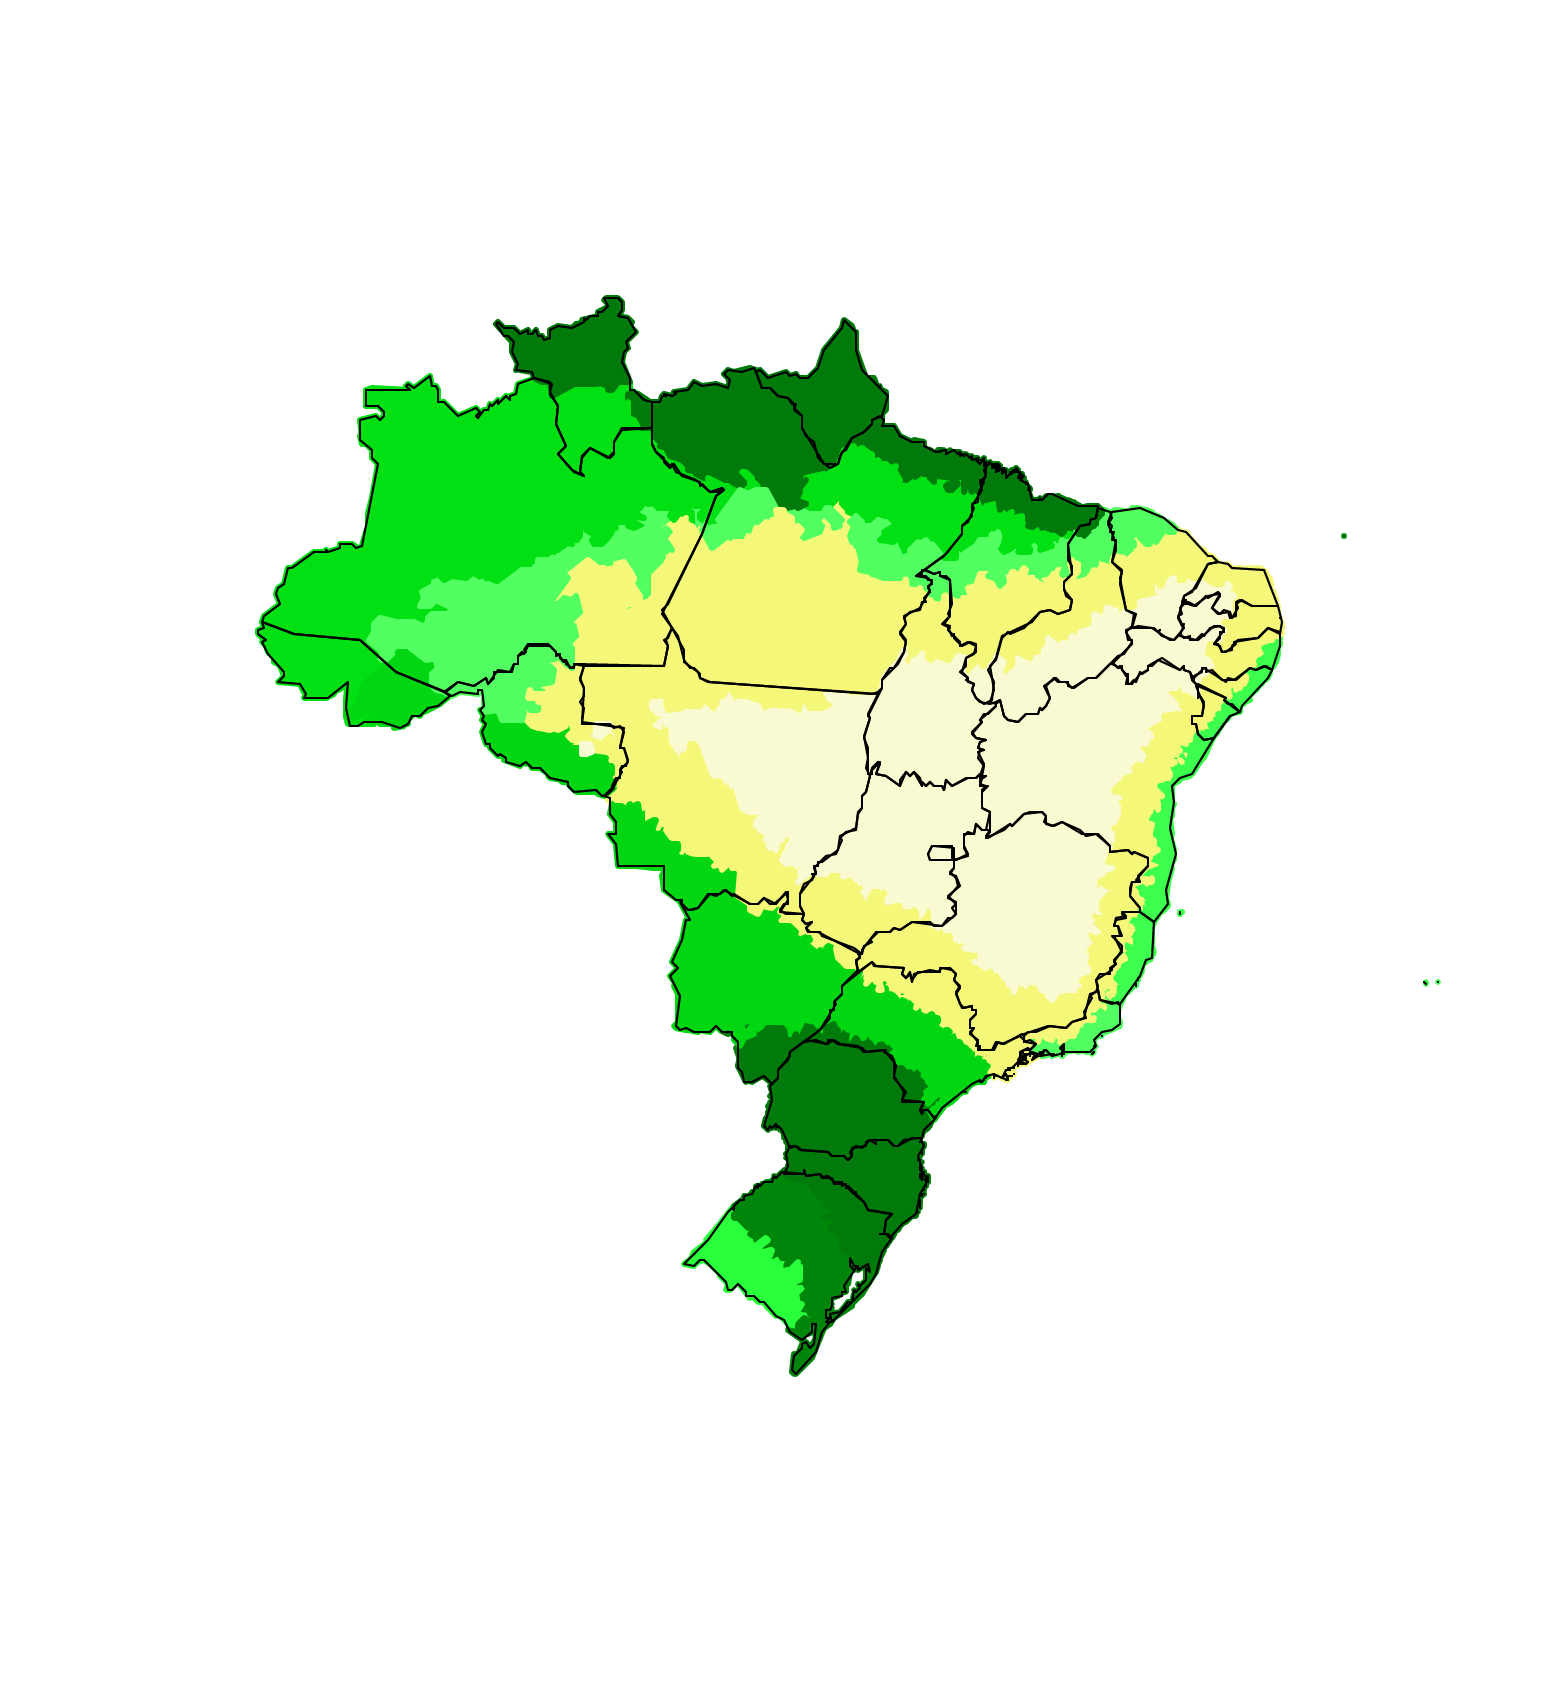 Mapa do Brasil feito pelo Inmet aponta previsão de chuvas fortes no Sul e no extremo norte do país nesta quinta-feira (10/6) (Foto: Inmet)